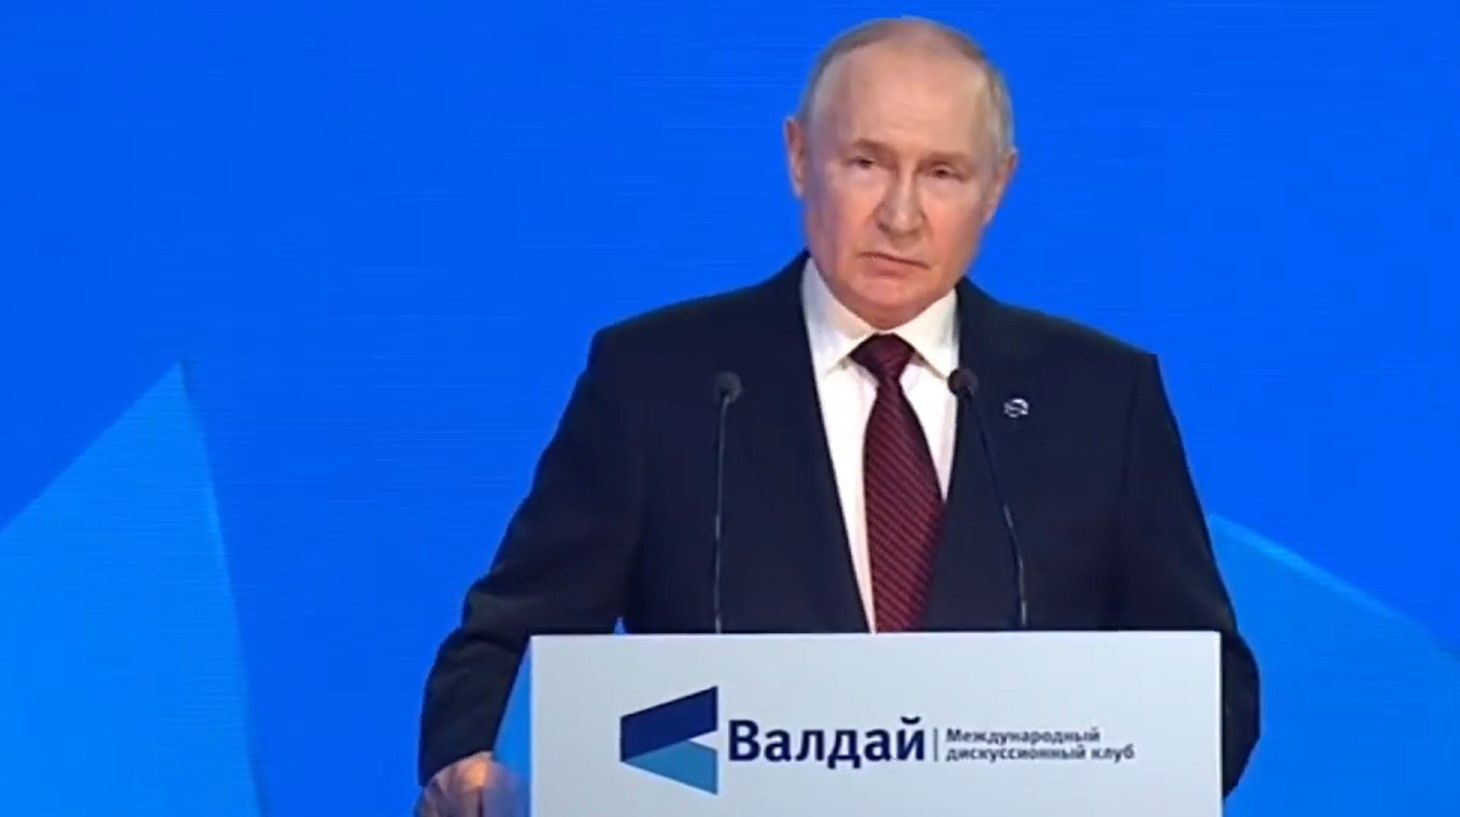 Путин читал речь в Валдае